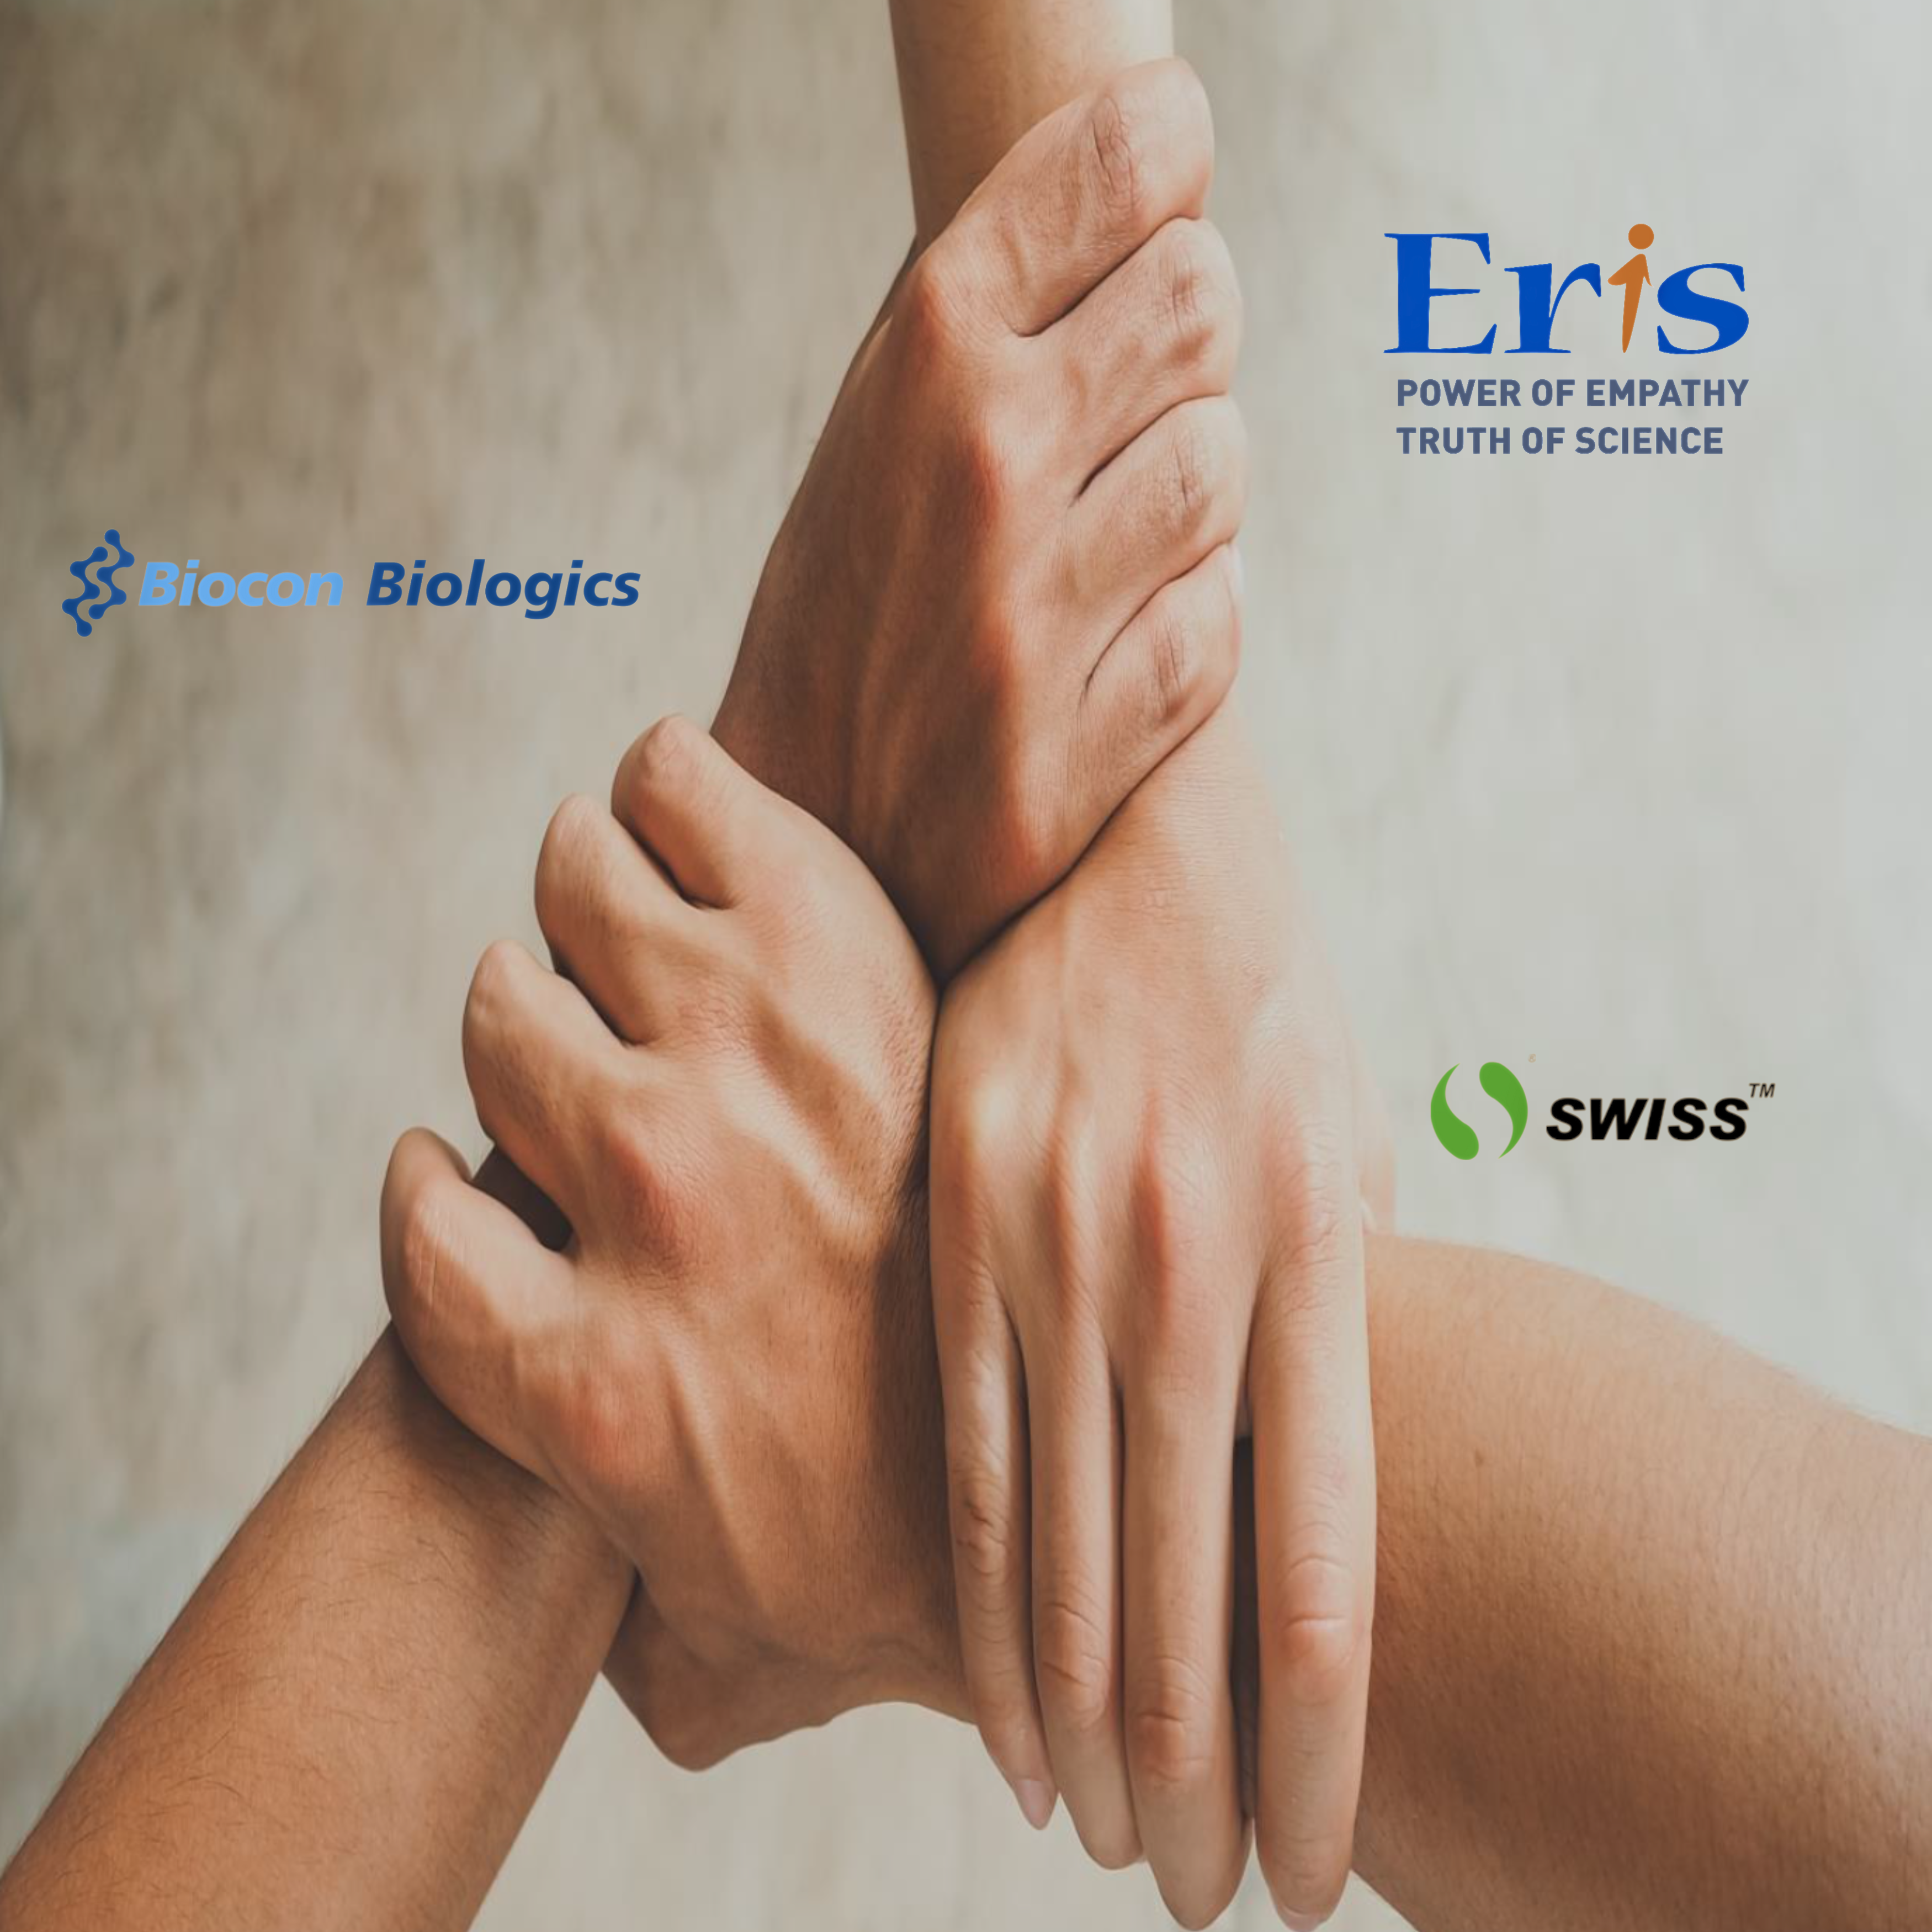 Eris-Lifesciences-Biocon-Swiss-Parenterals-Acquisition